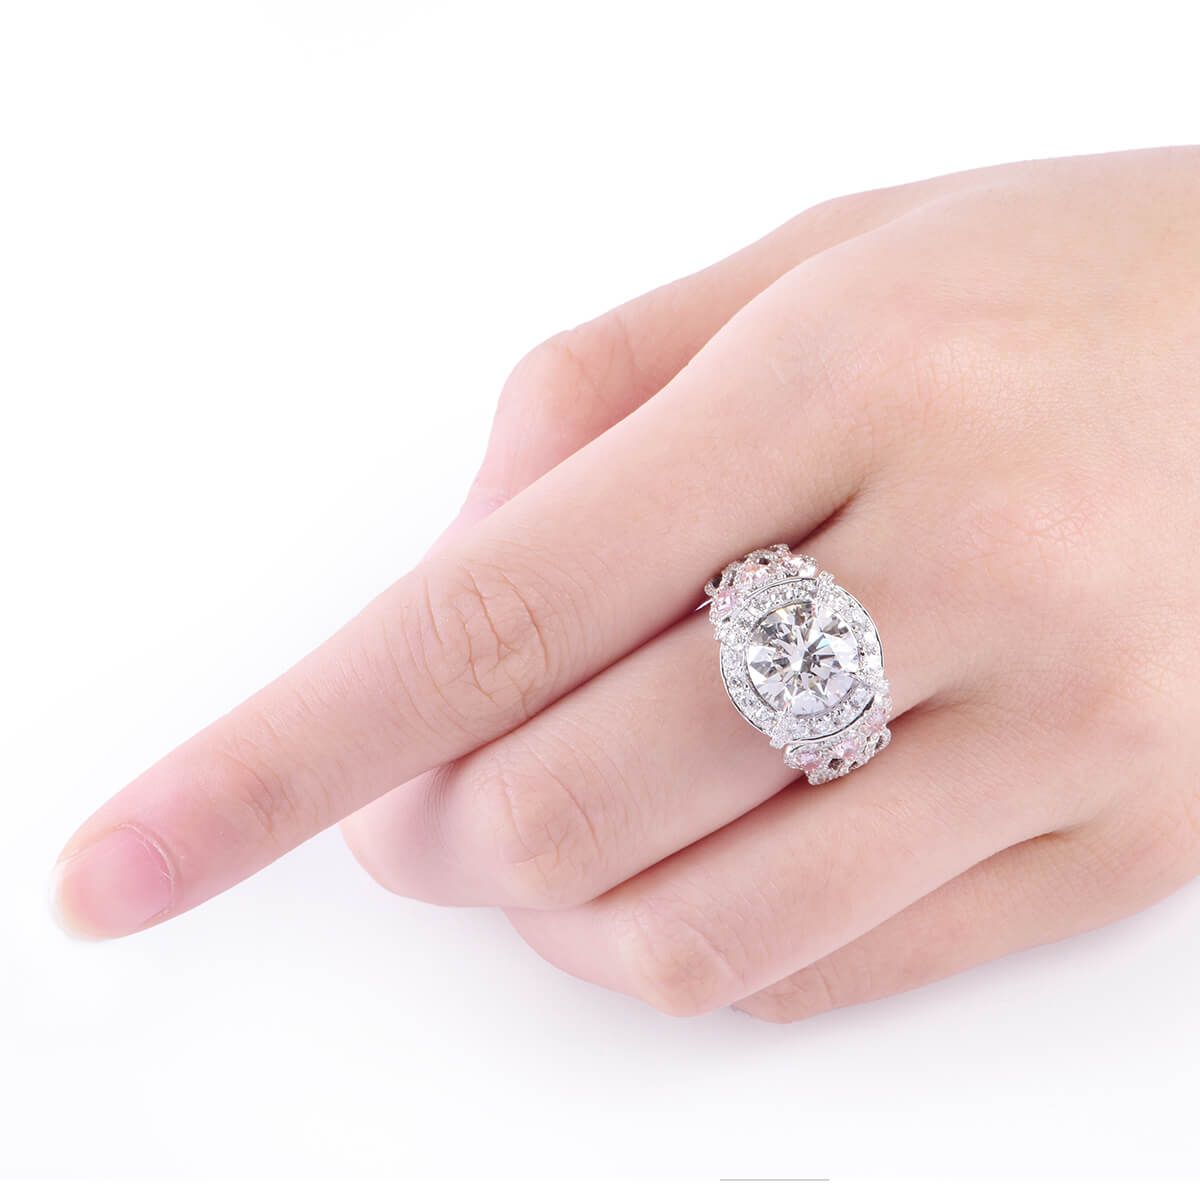  White Diamond Ring, 1.77 Ct. TW, Round shape, GIA Certified, 6235735965